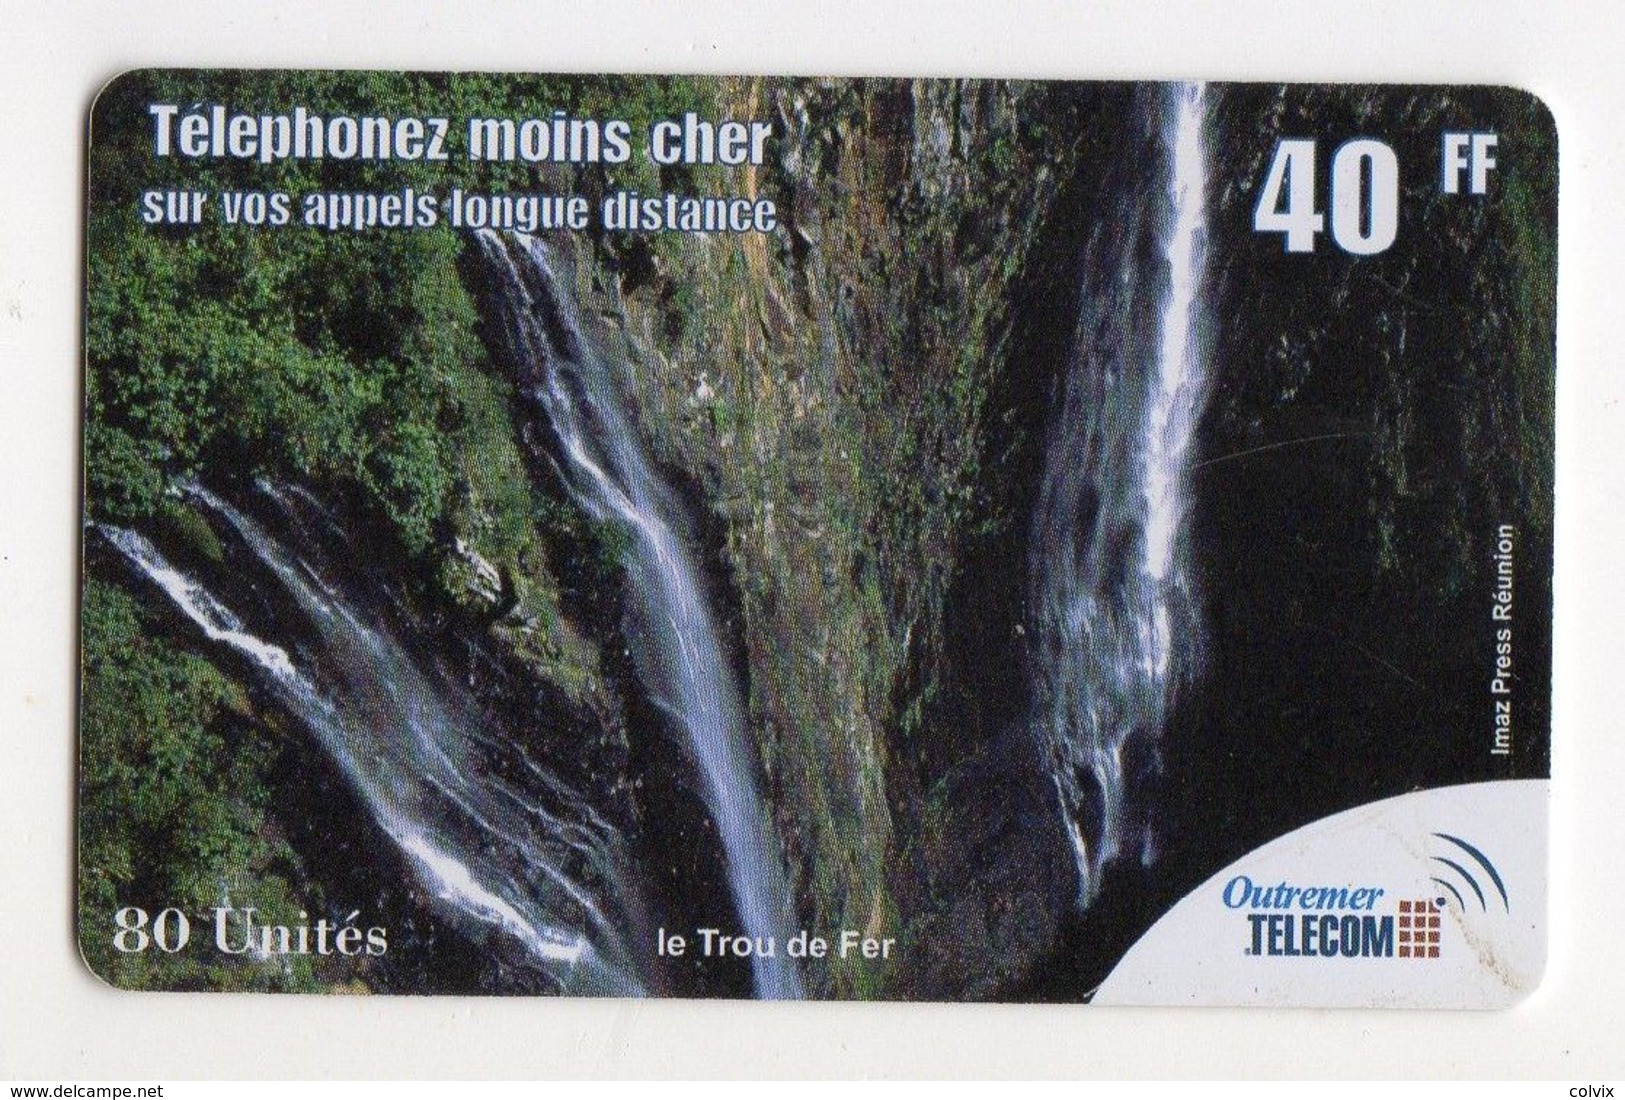 ANTILLES FRANCAISE PREPAYEE OUTREMER TELECOM LE TROU DE FER 40FF - Antillen (Französische)